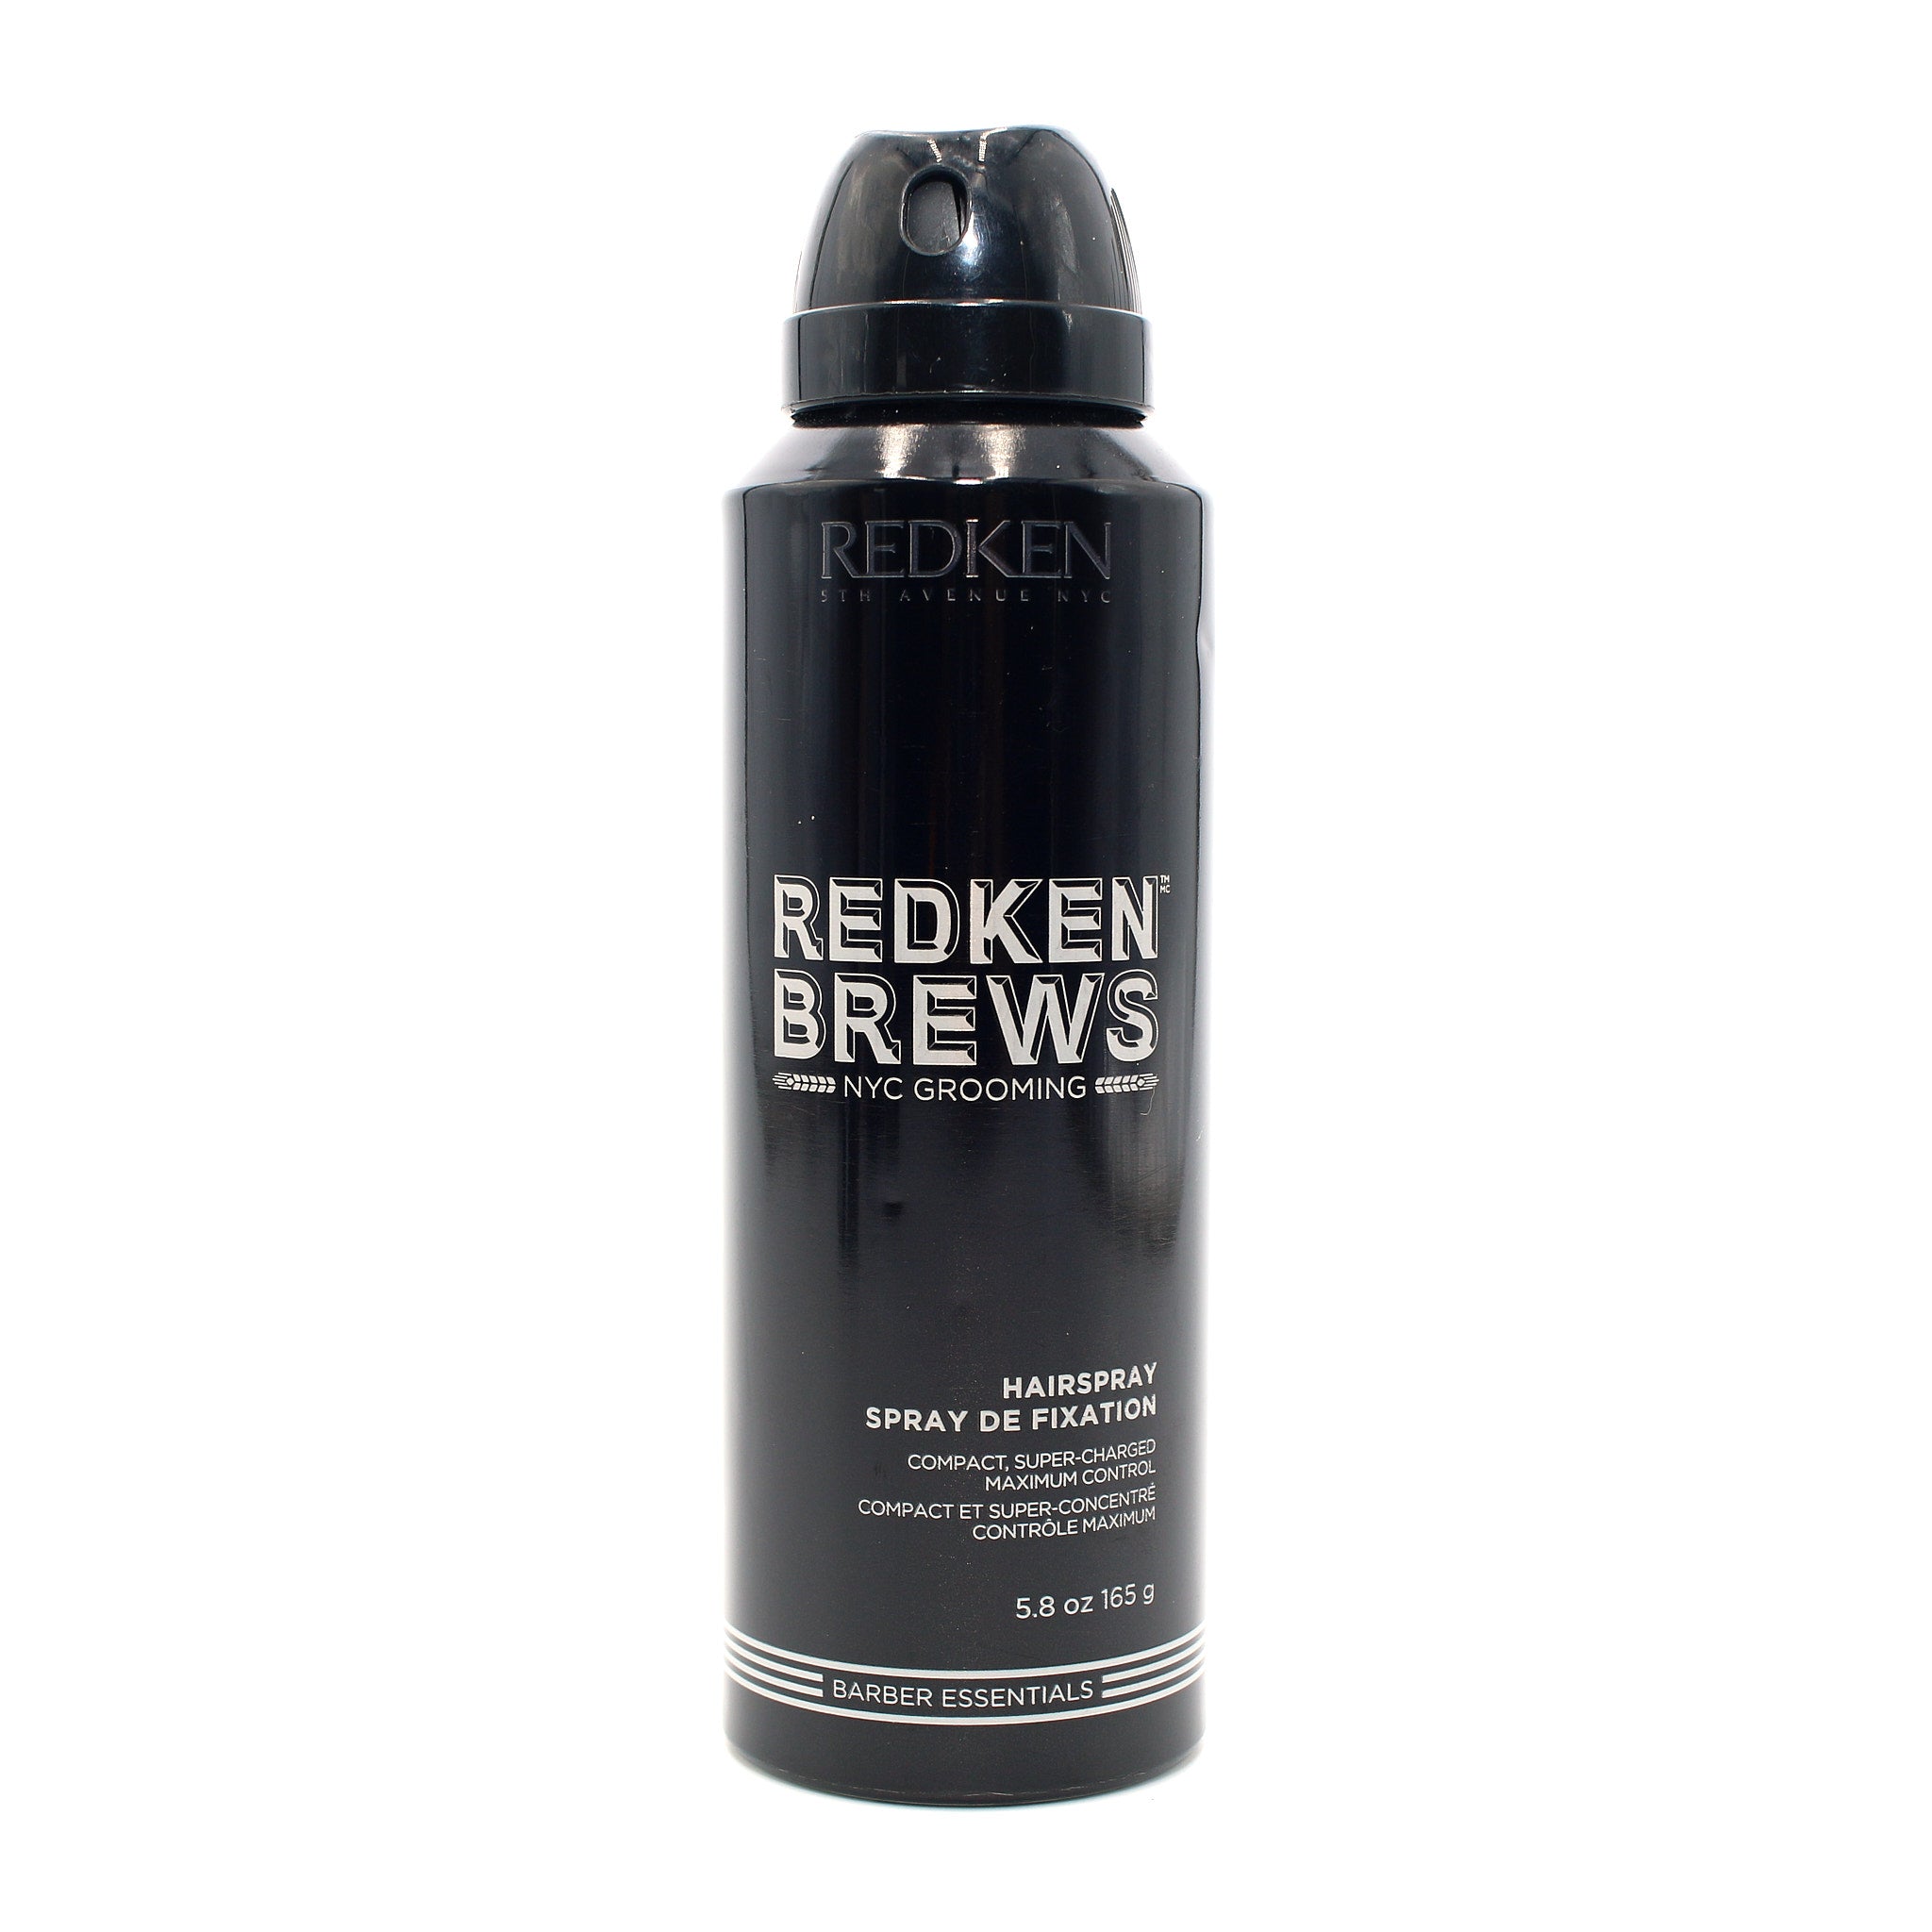 REDKEN Brews Hairspray 5.8 oz